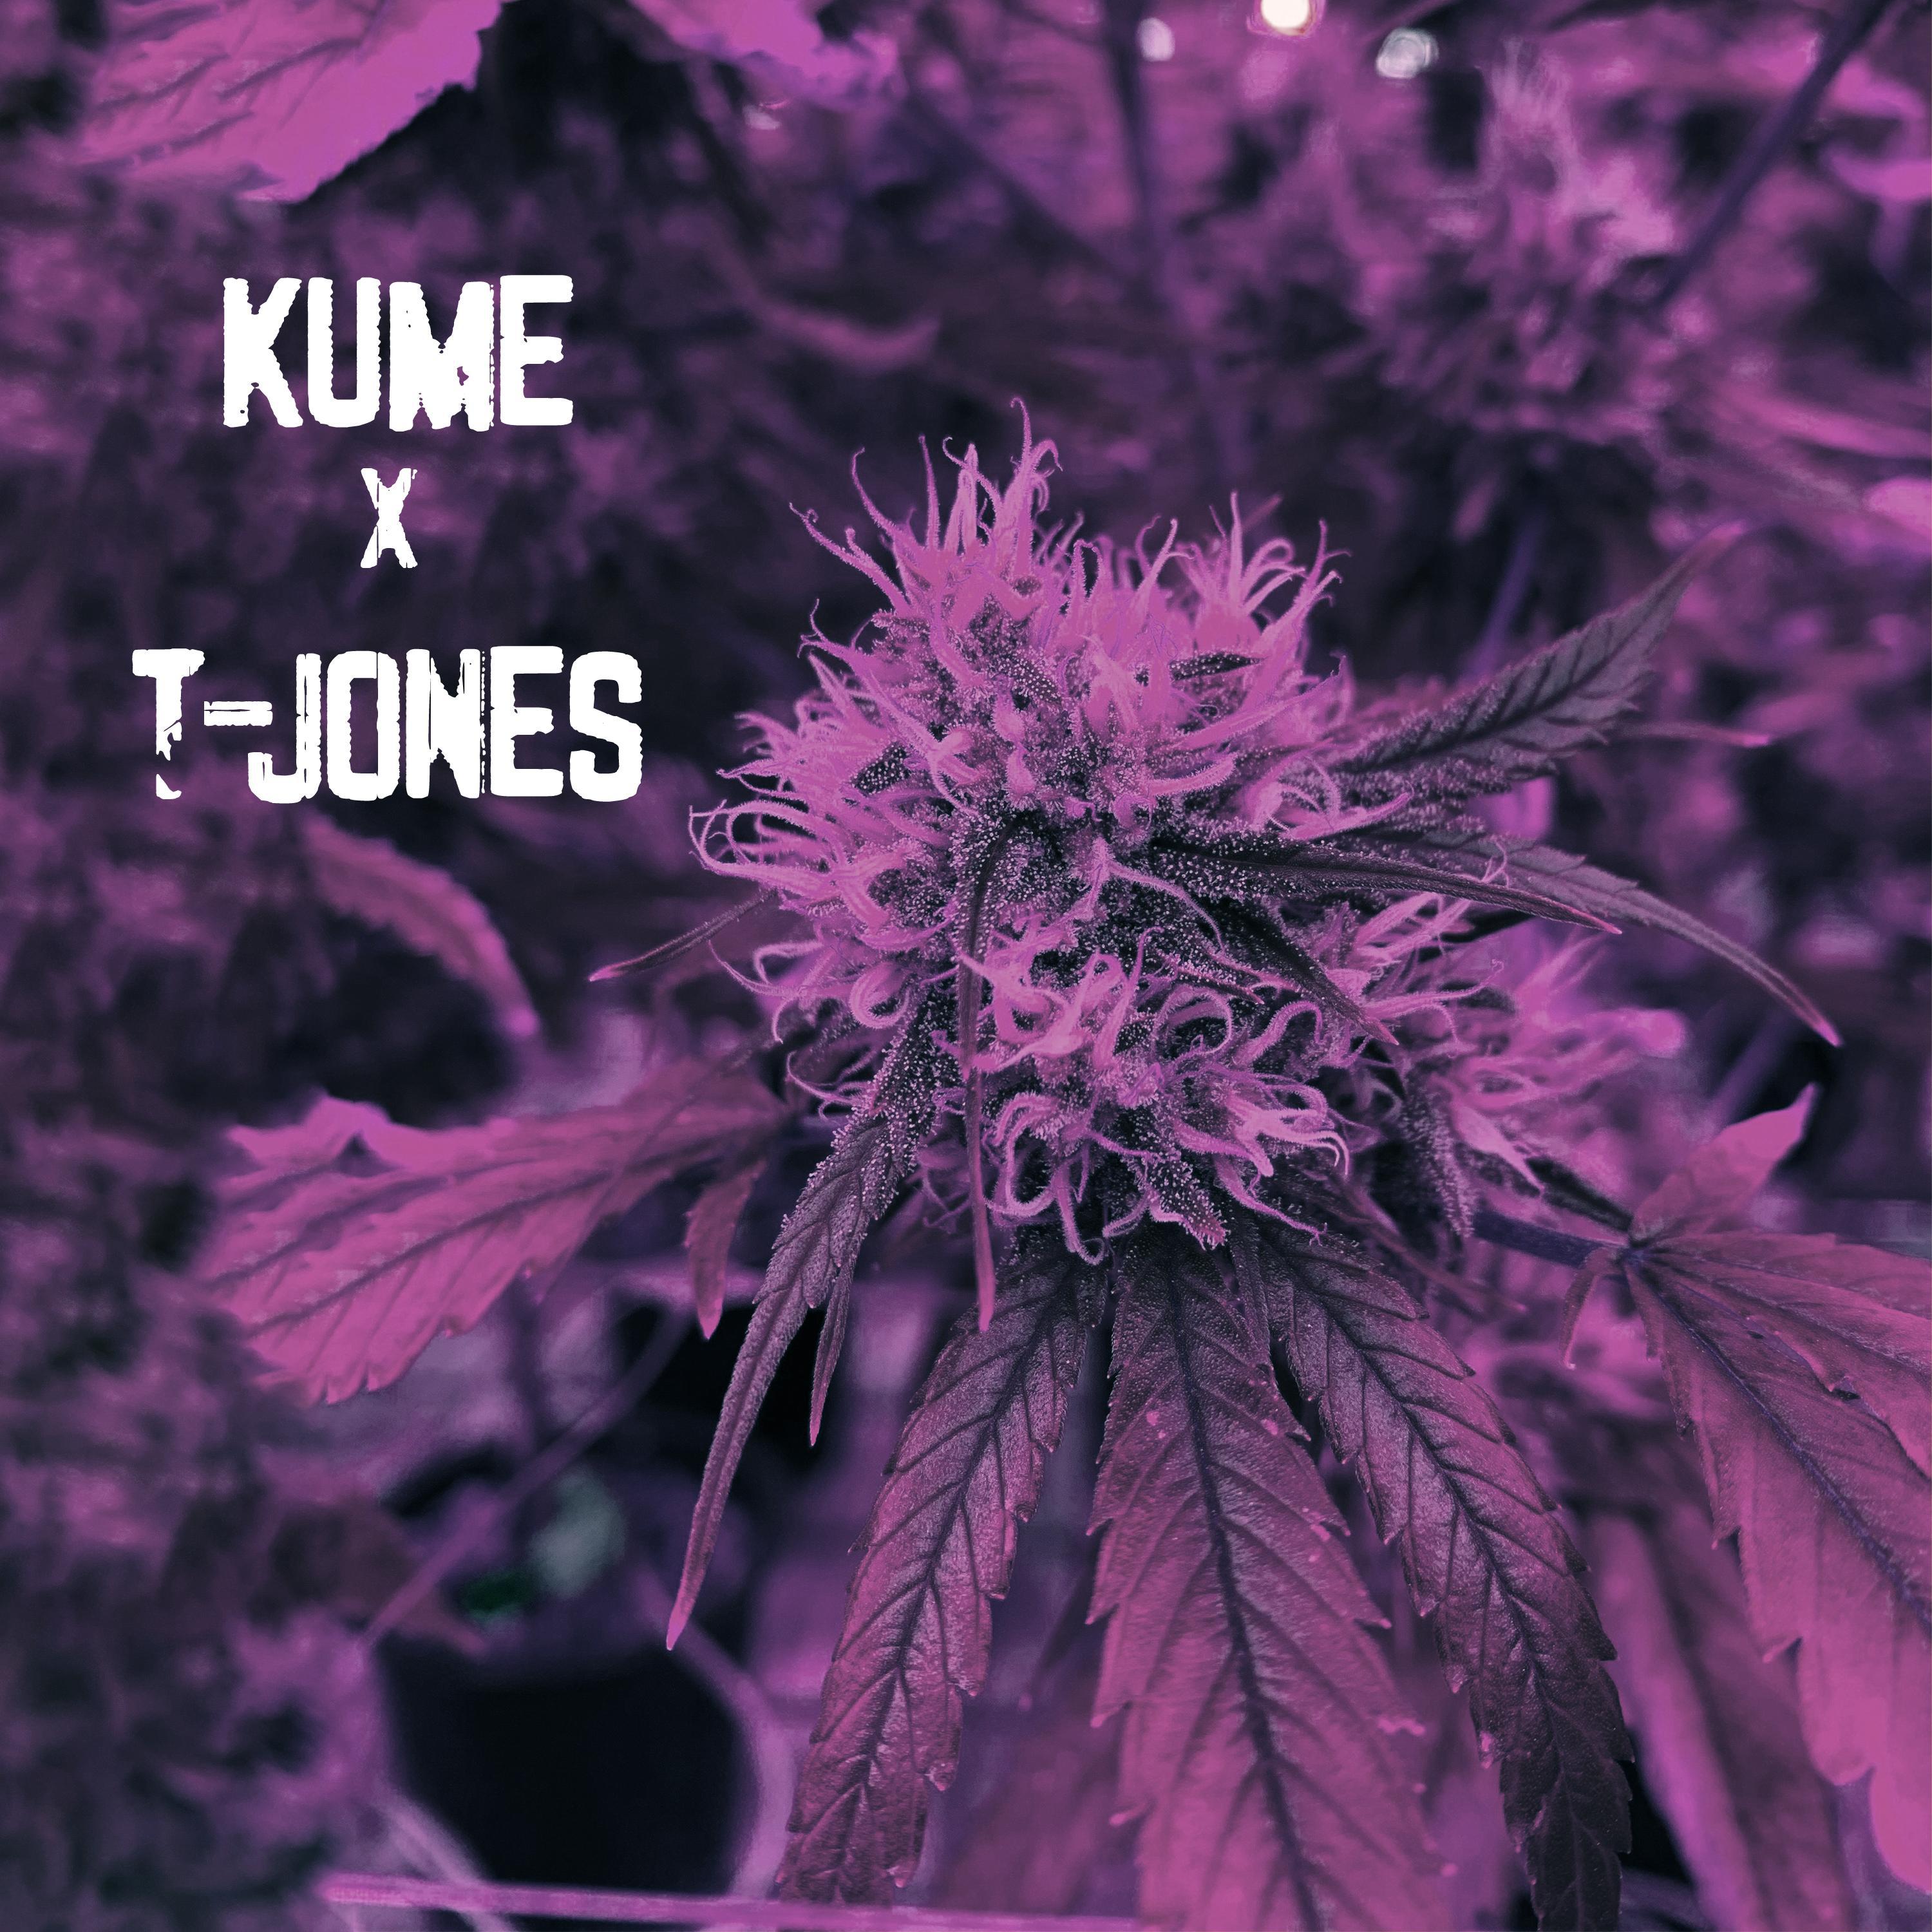 Kume - K-pops (feat. T-Jones)